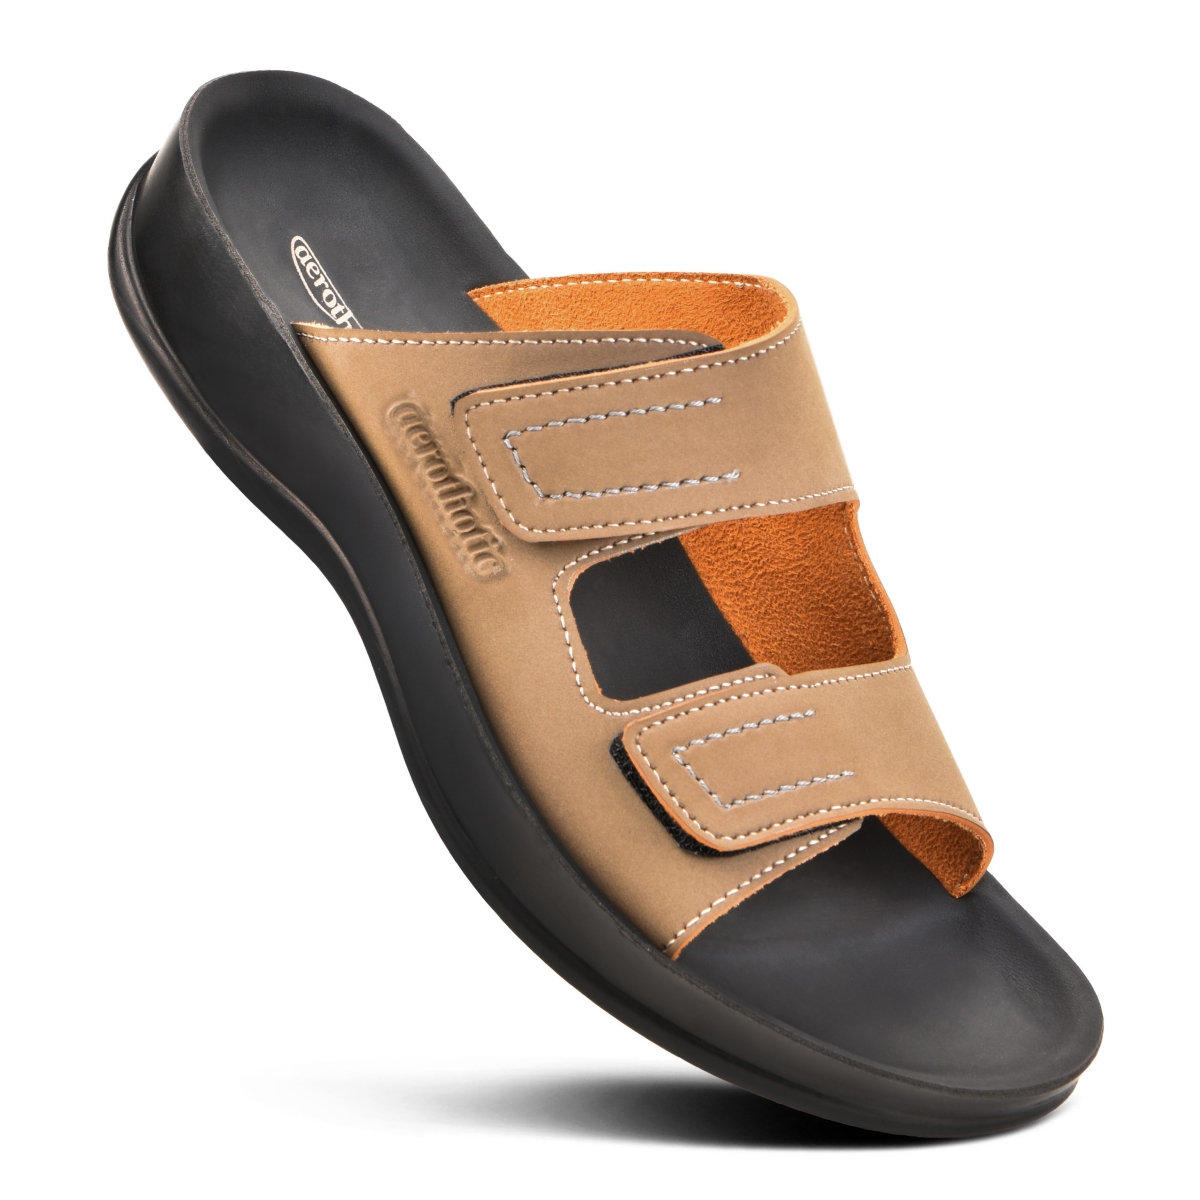 Urania Women's Slip-on Comfortable Slide Sandal - Brown